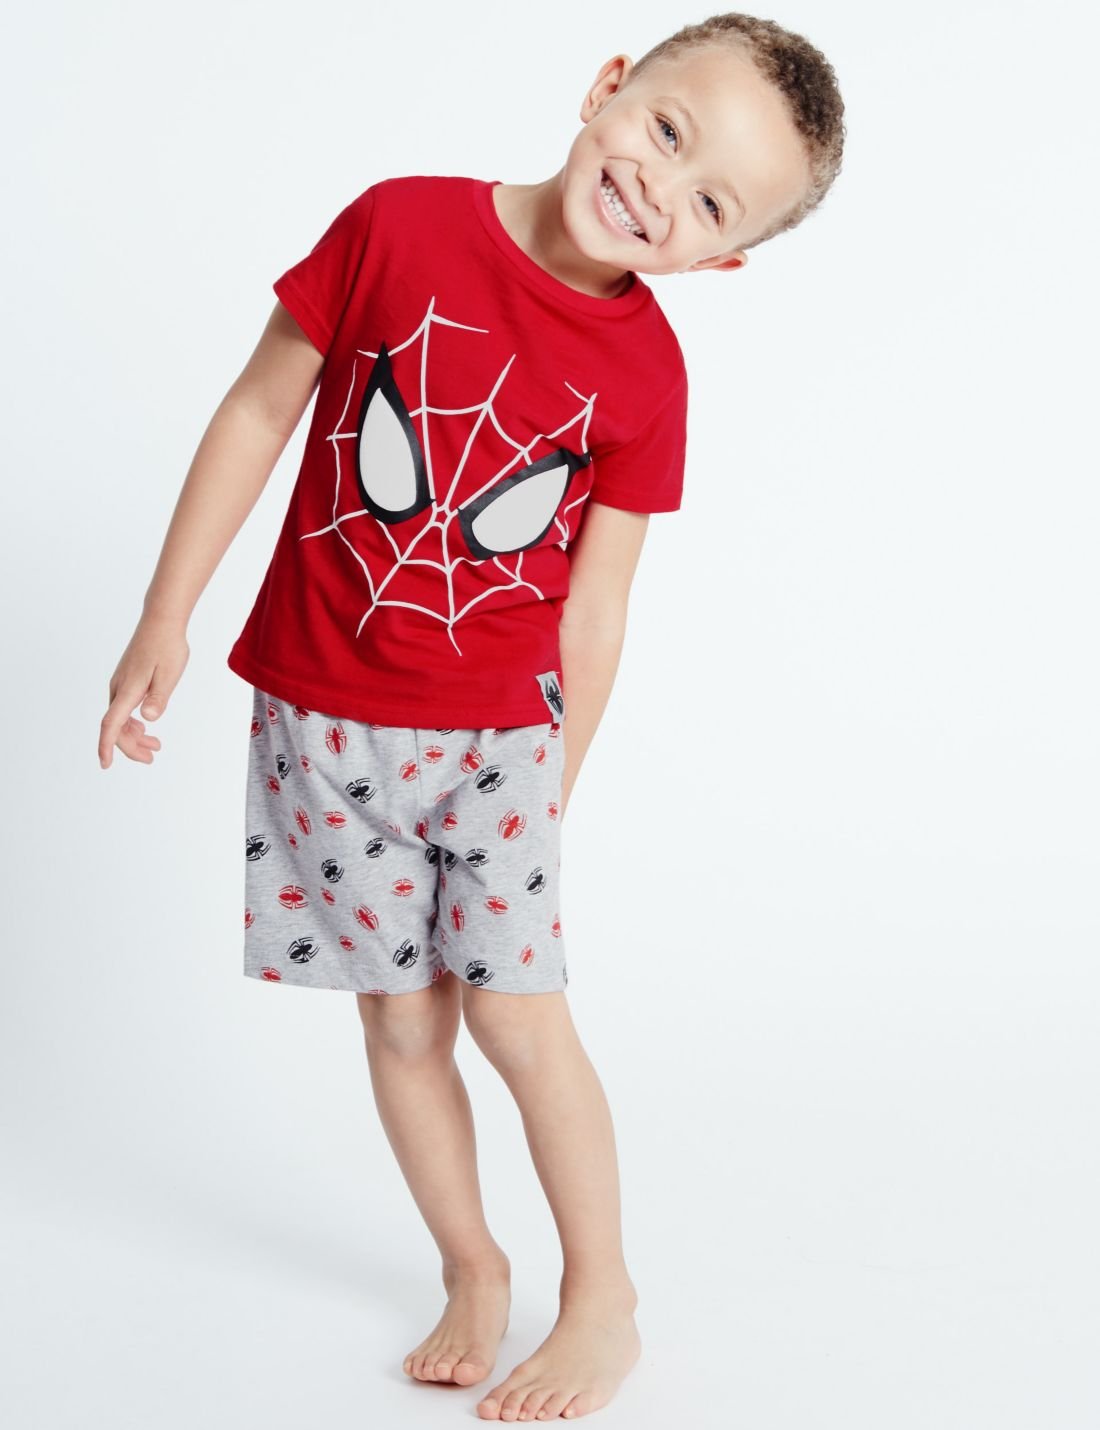 Saf Pamuklu Spider Man Şort Pijama (9 Ay - 8 Yaş)